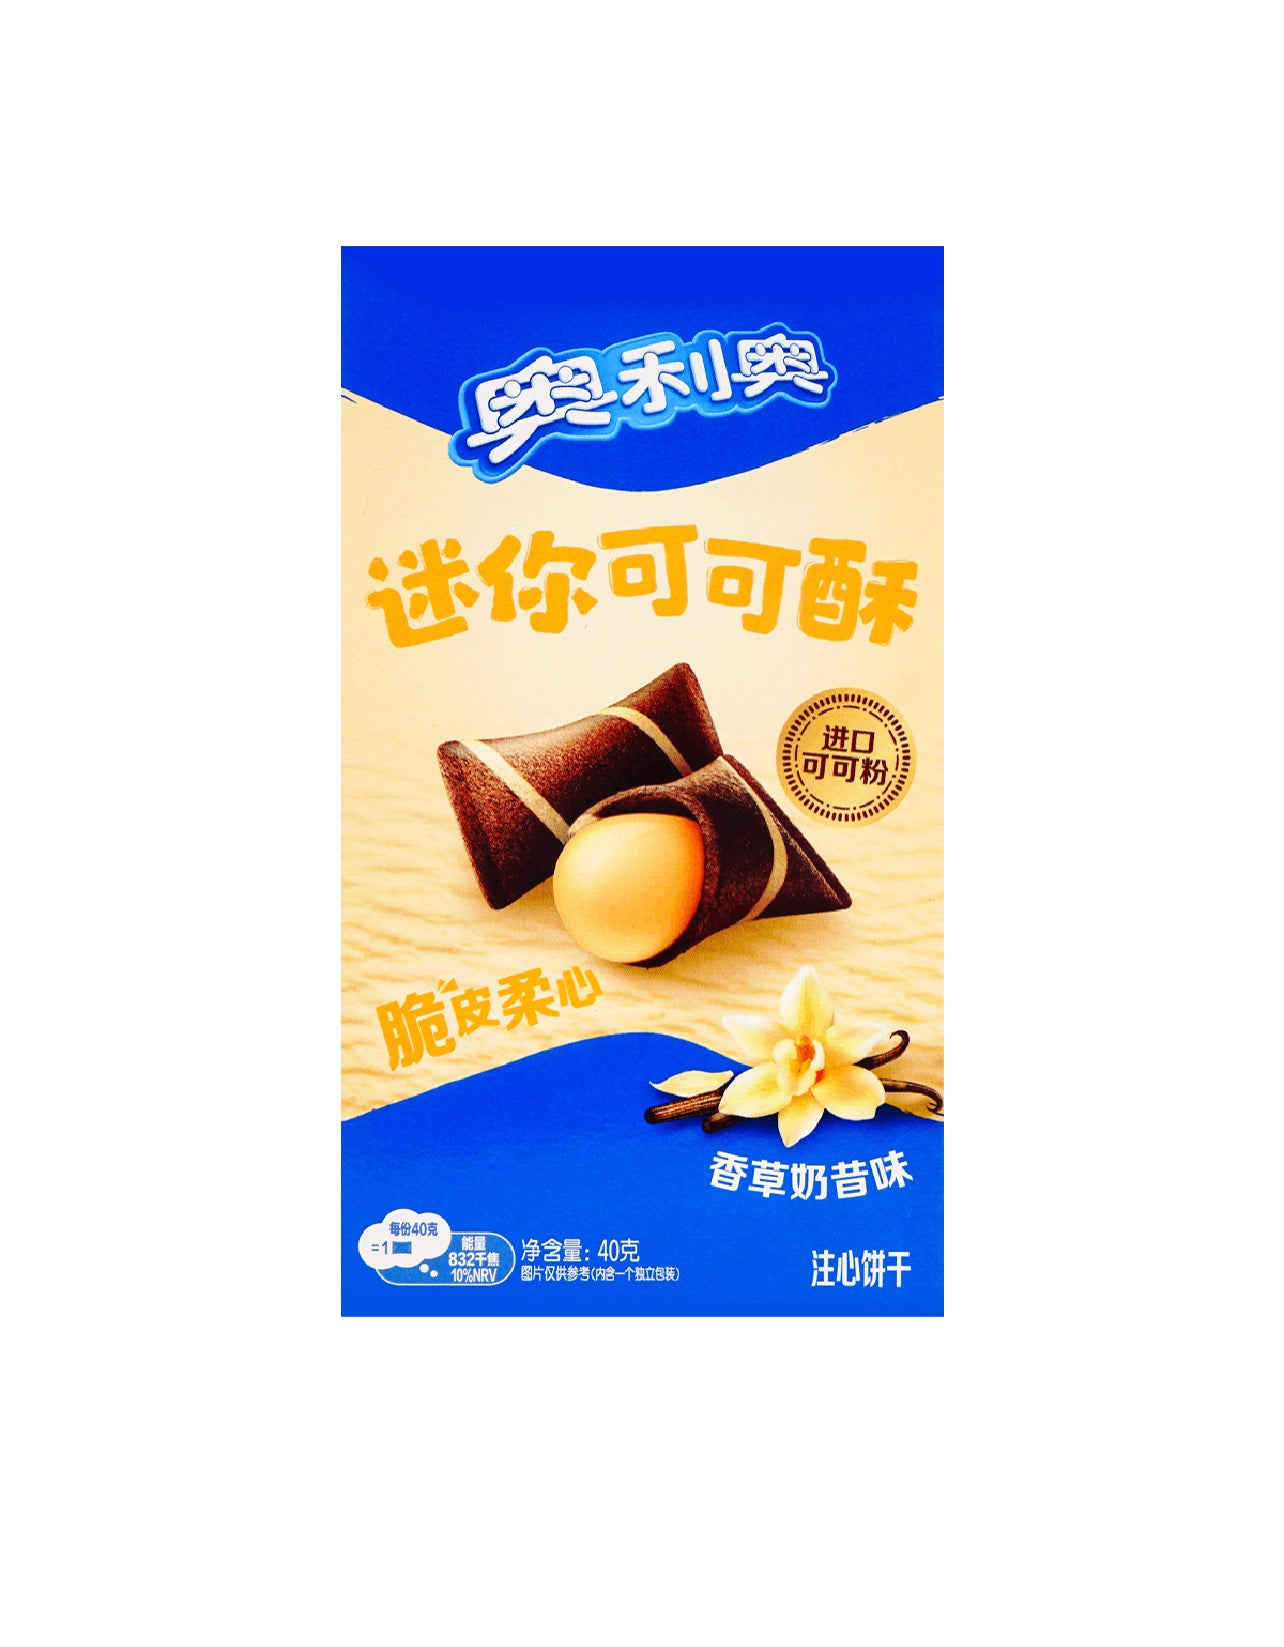 Mini Oreo cocoa crisps Vanilla flavor 1.41Oz